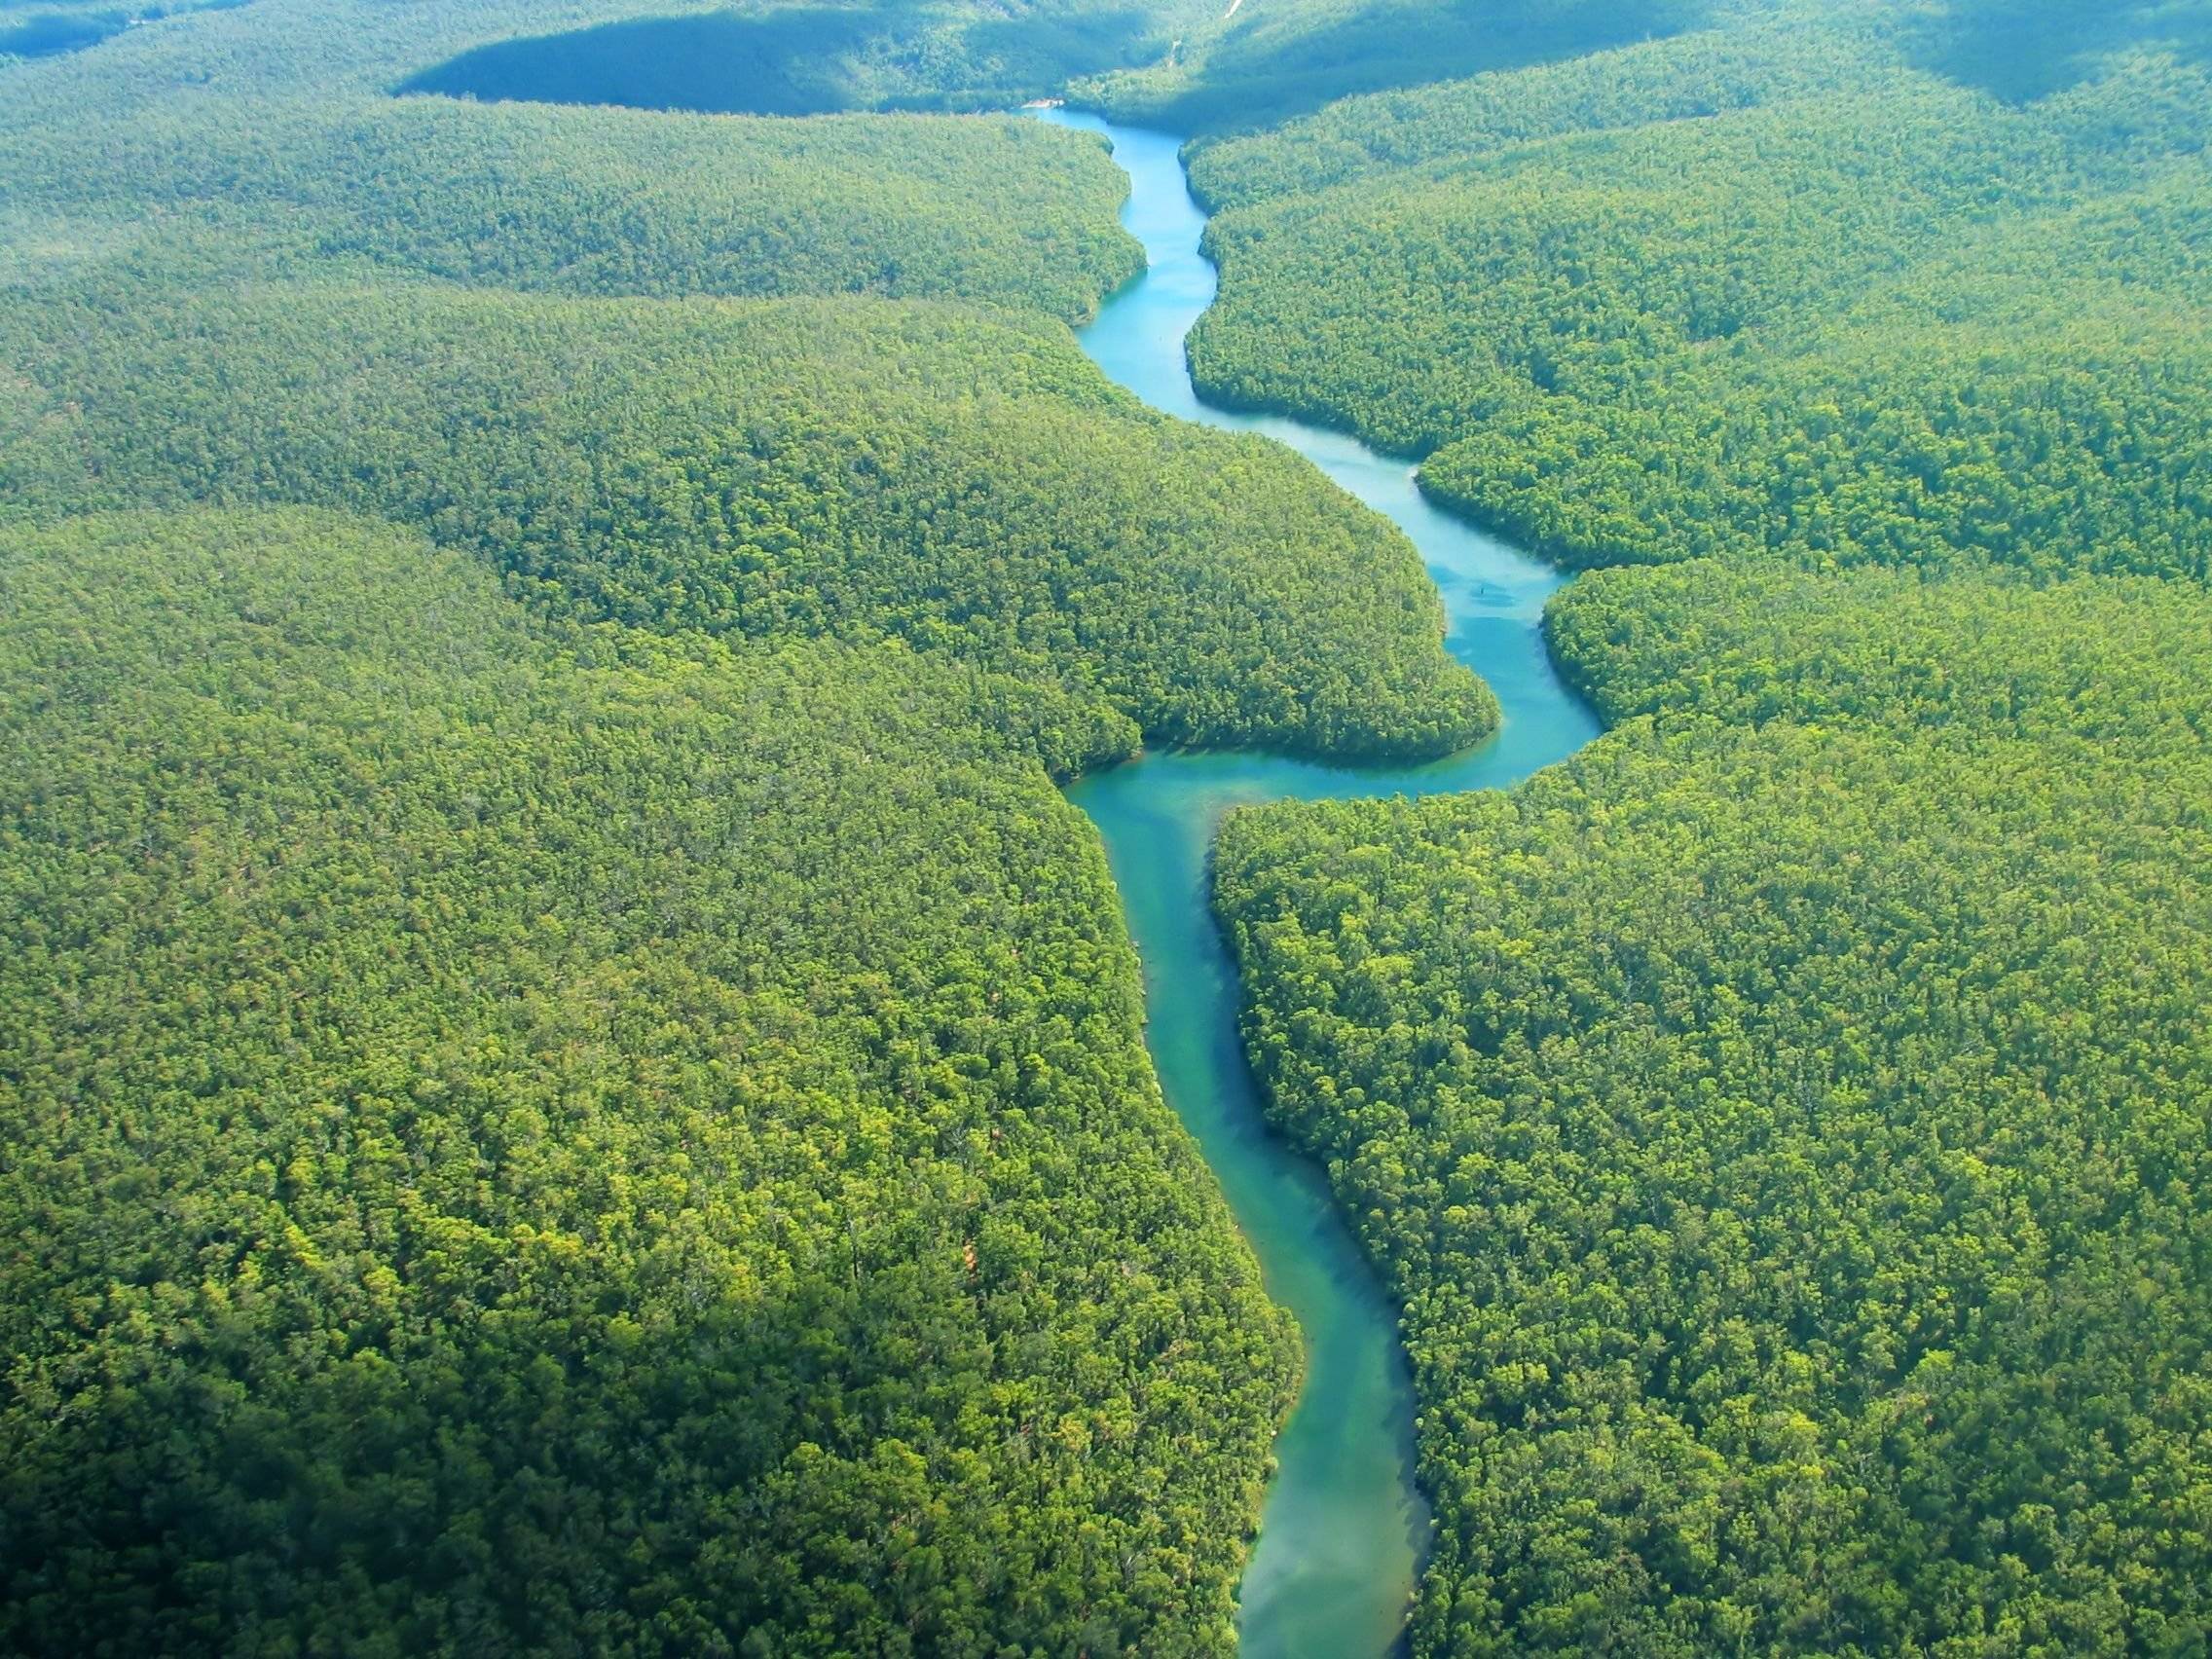 Giungla experience: seguendo il corso del Rio delle Amazzoni